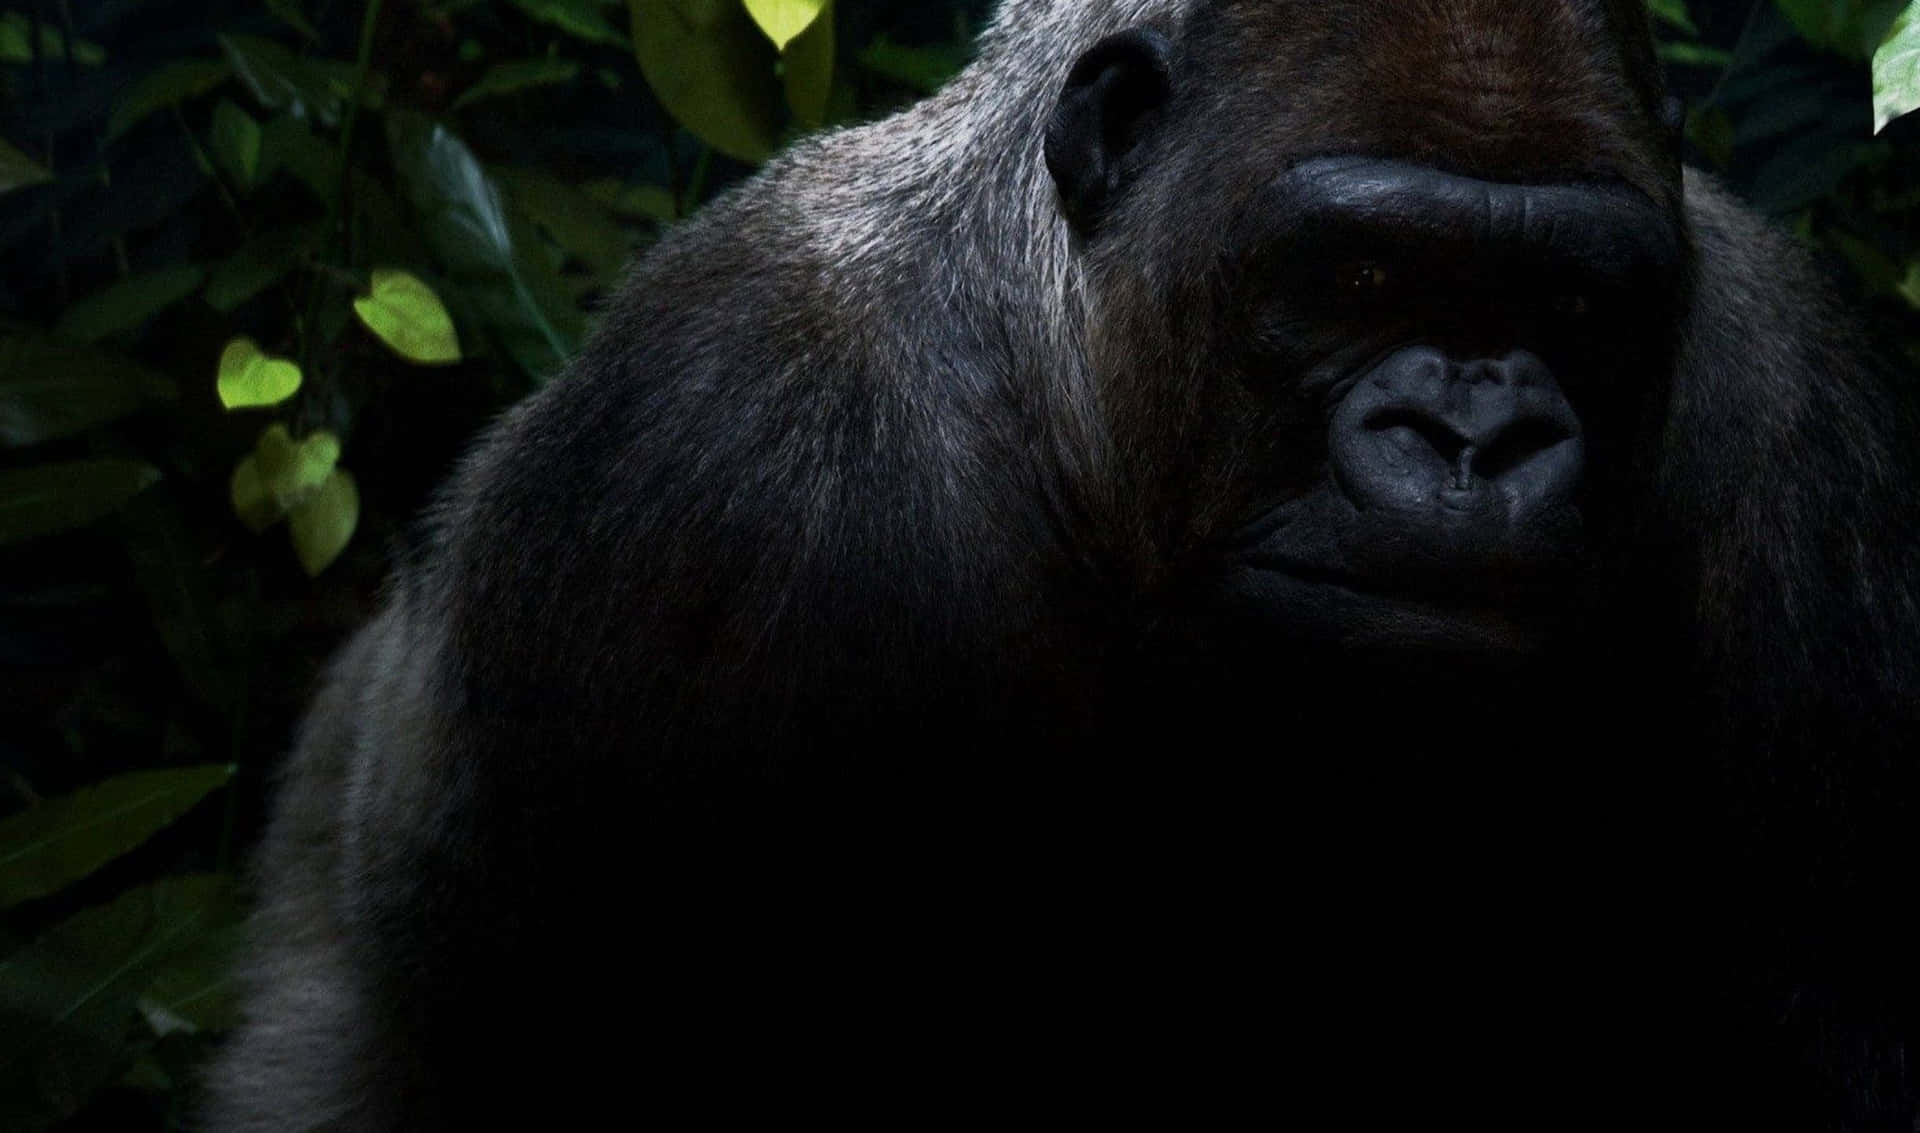 A close-up of a Gorilla in its natural habitat.